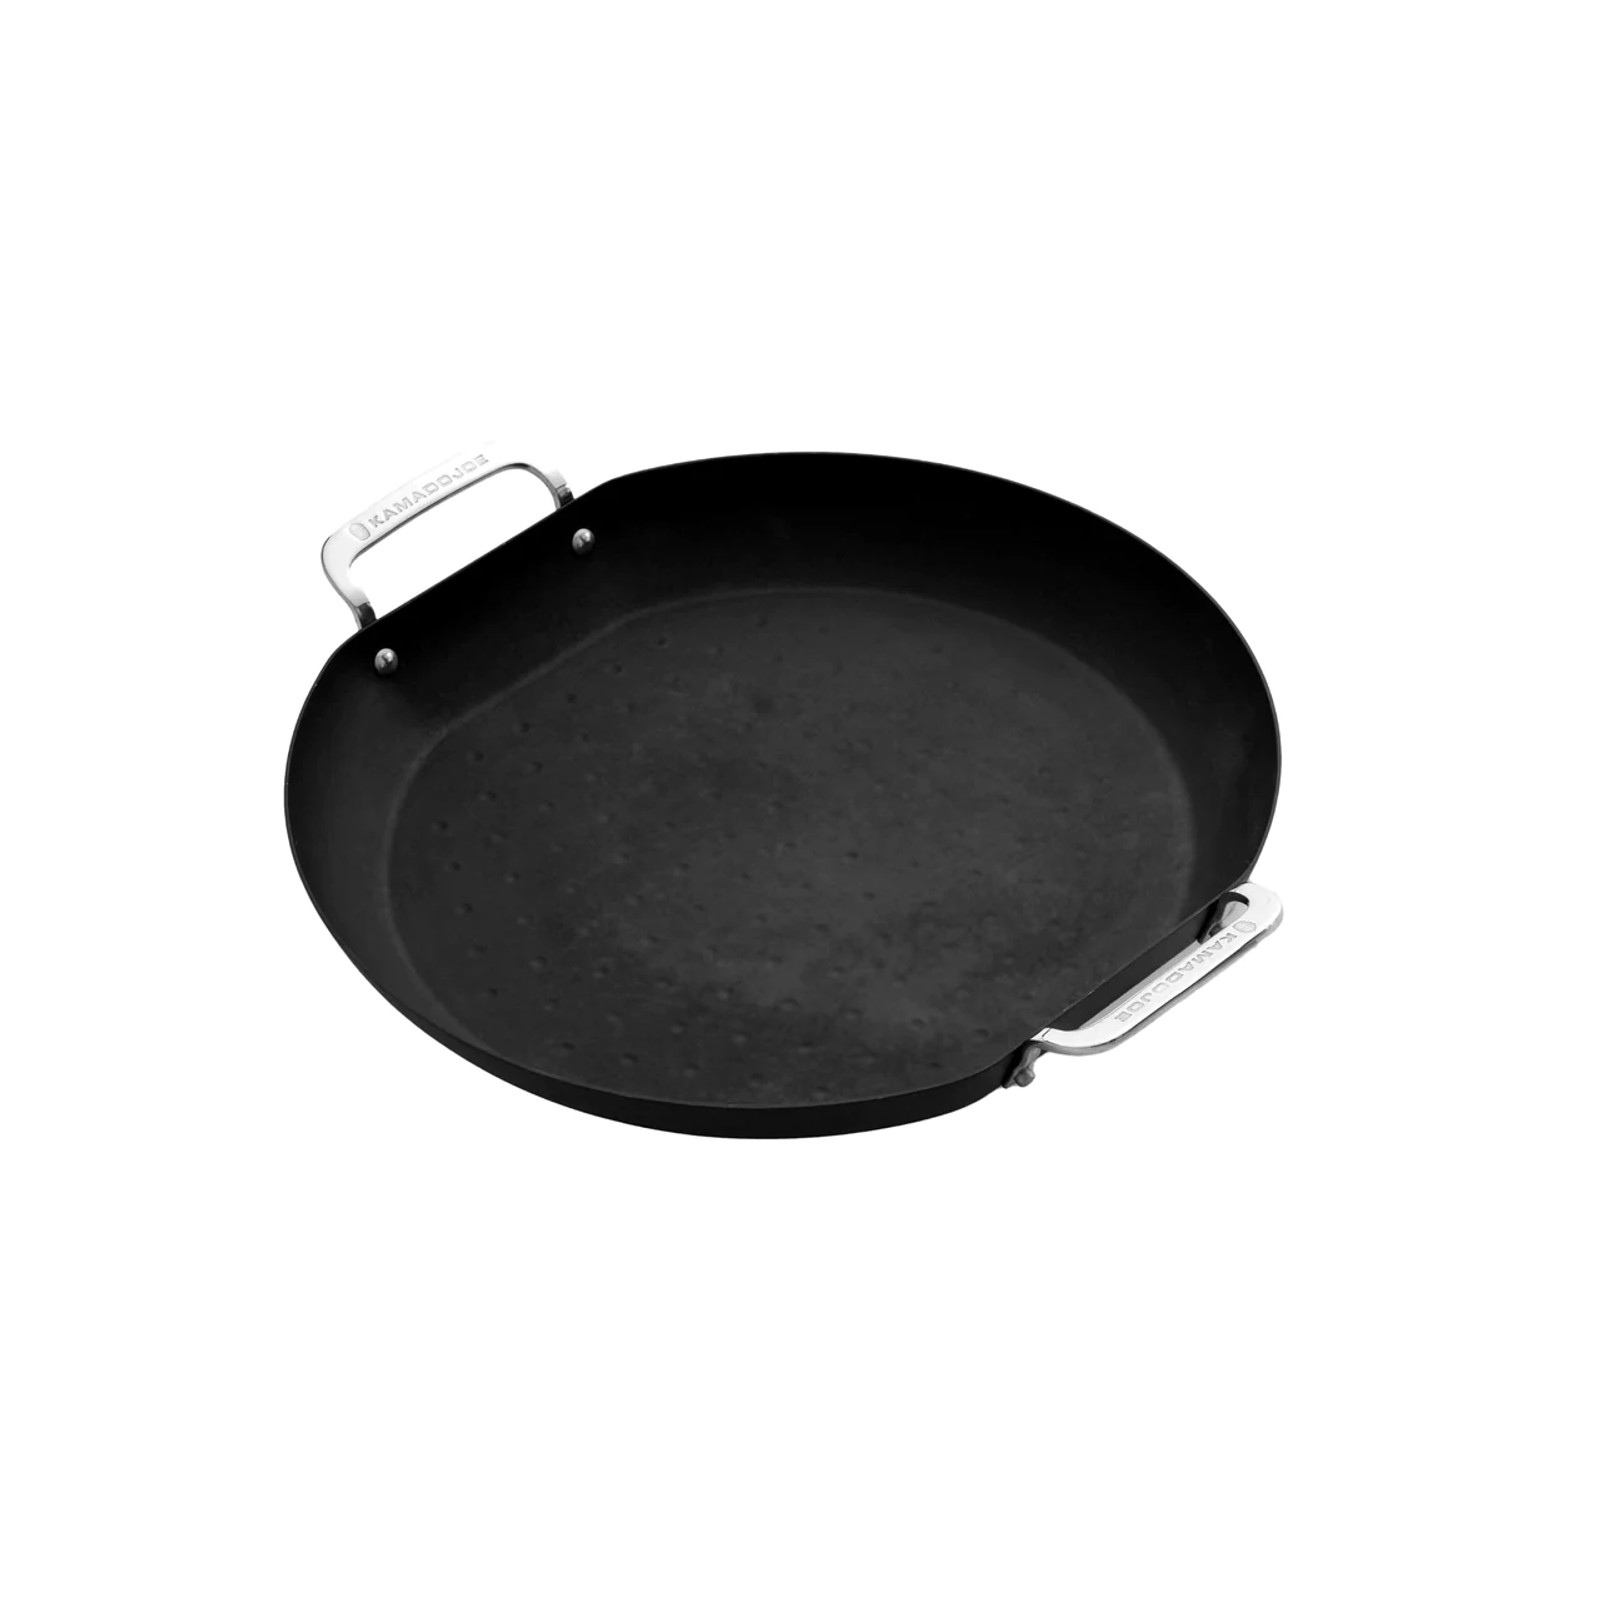 Kamado Joe Karbon Steel Paella Pan